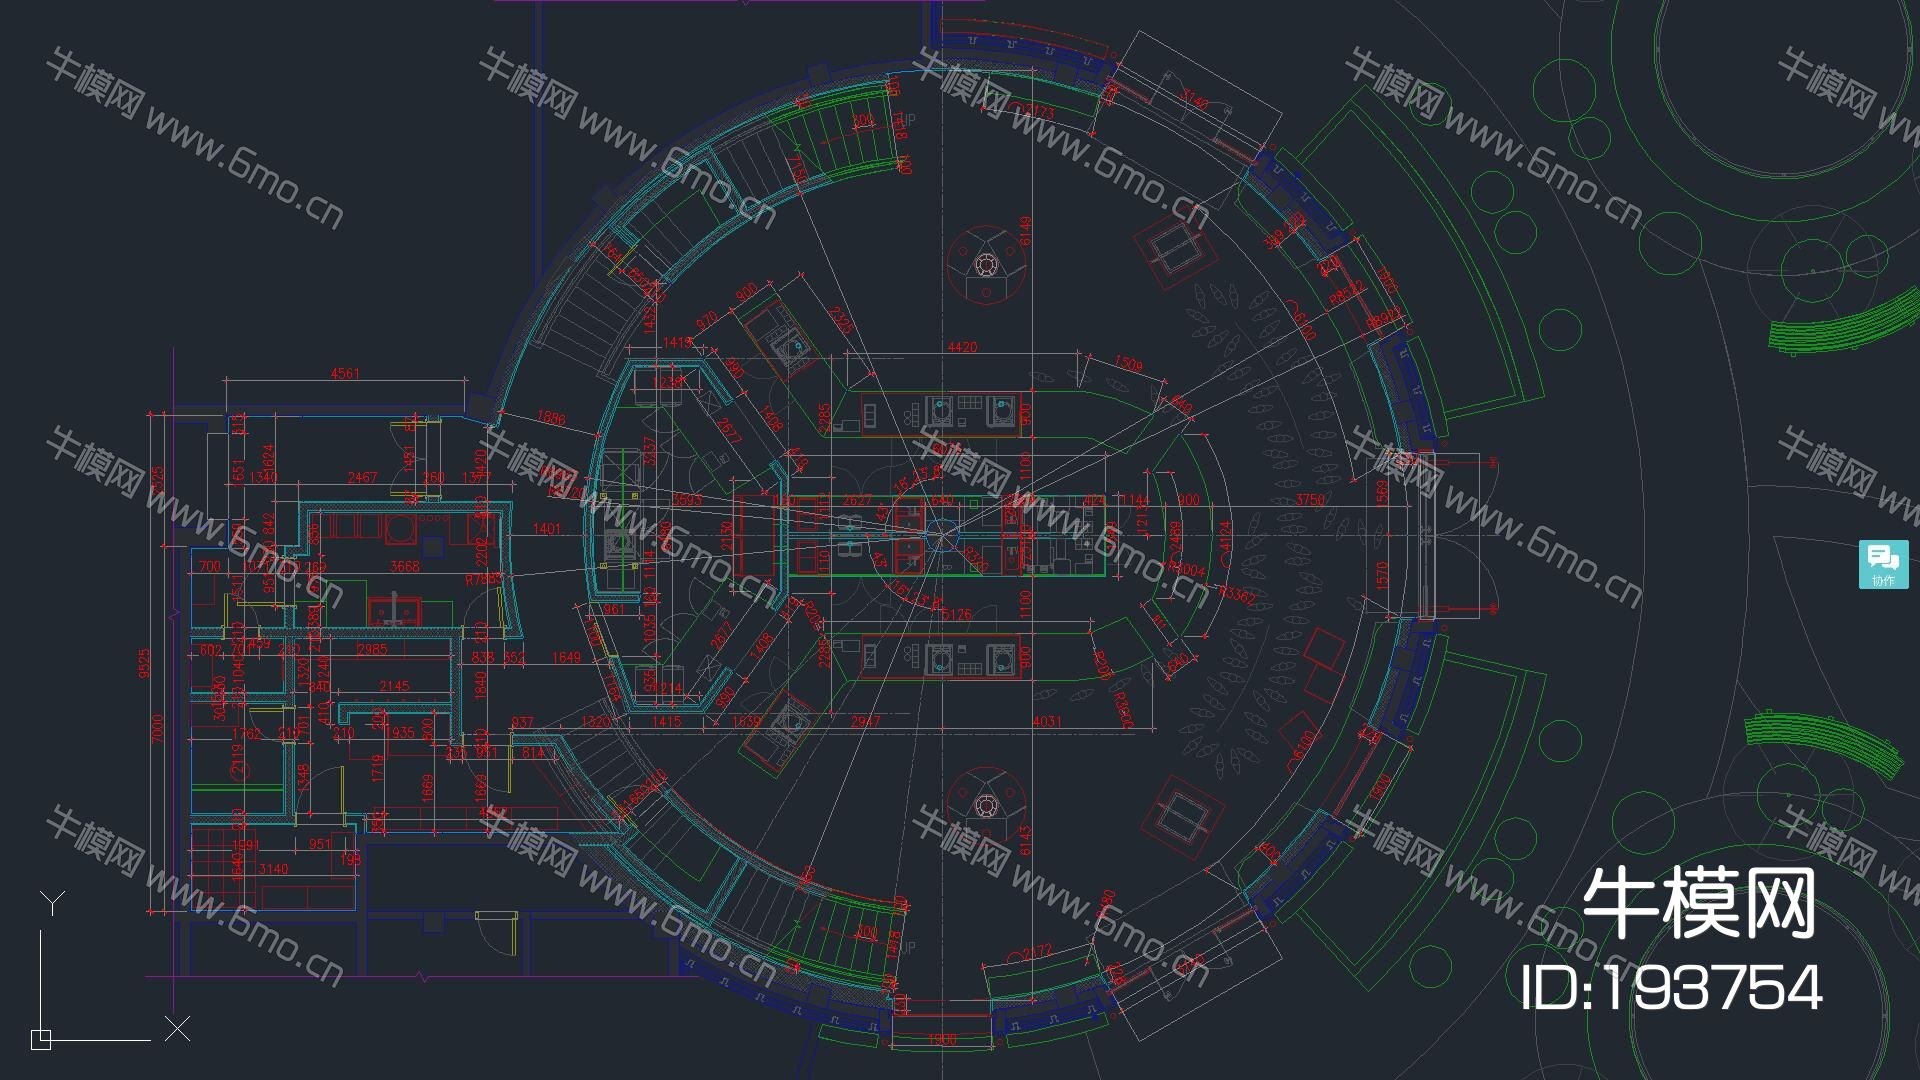 星巴克-上海GOOD HOUSE迪士尼店施工图+实景拍摄+方案+物料表